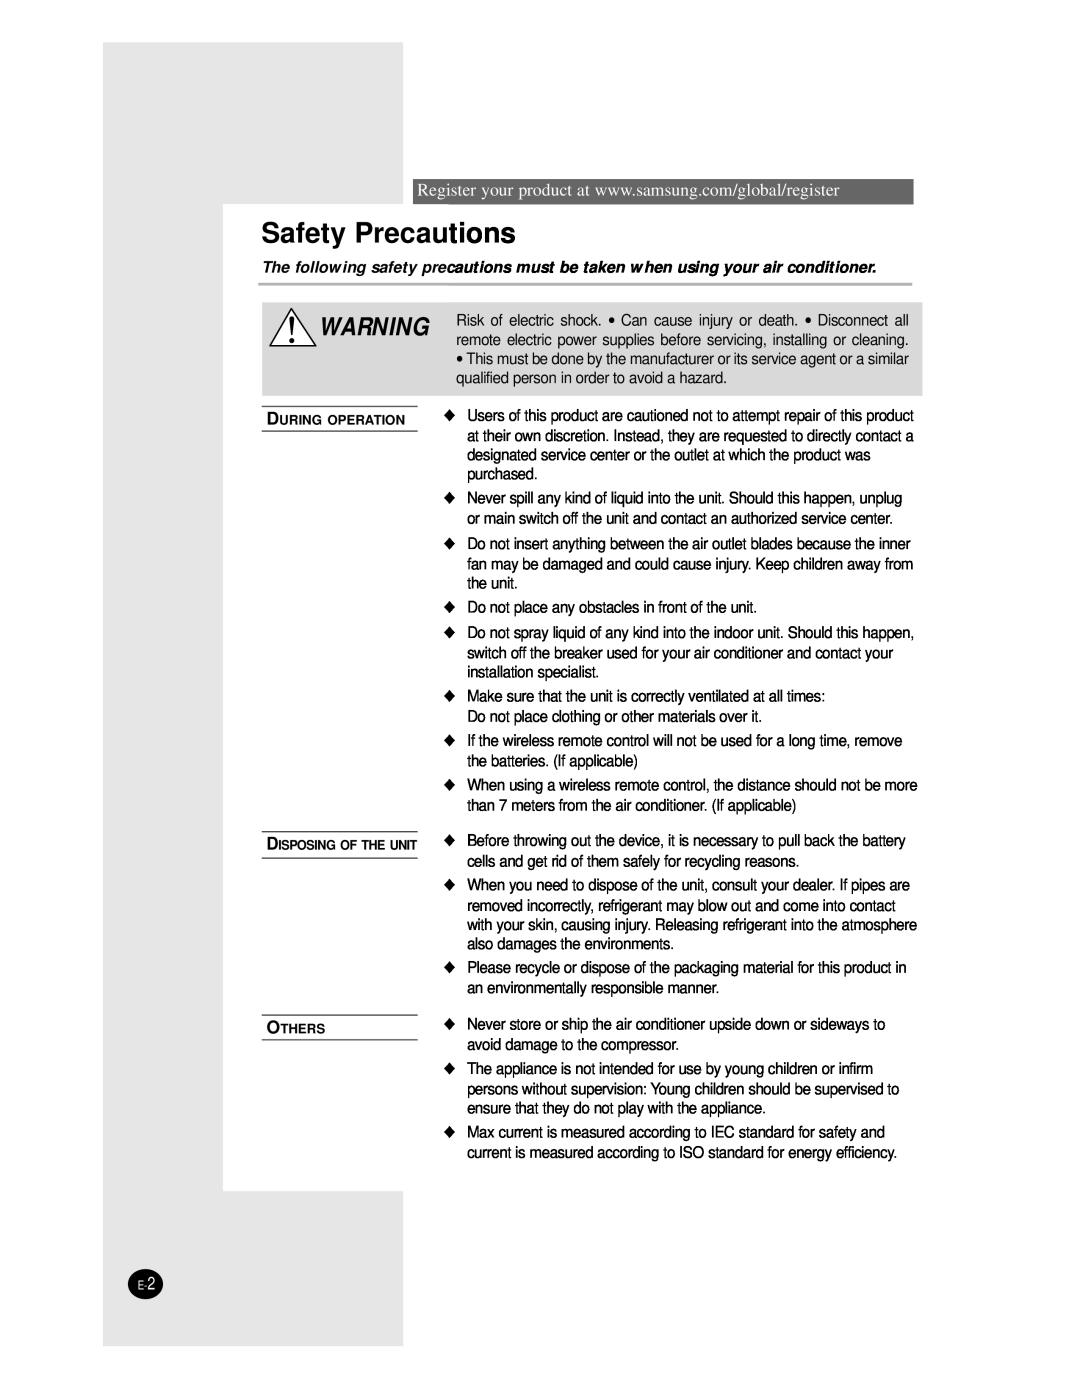 Samsung AVMKC026EA(B)0, AVMKC035EA(B)0, AVMKH020EA(B)0, AVMKC020EA(B)0, AVMKH026EA(B)0, AVMKH035EA(B)0 Safety Precautions 